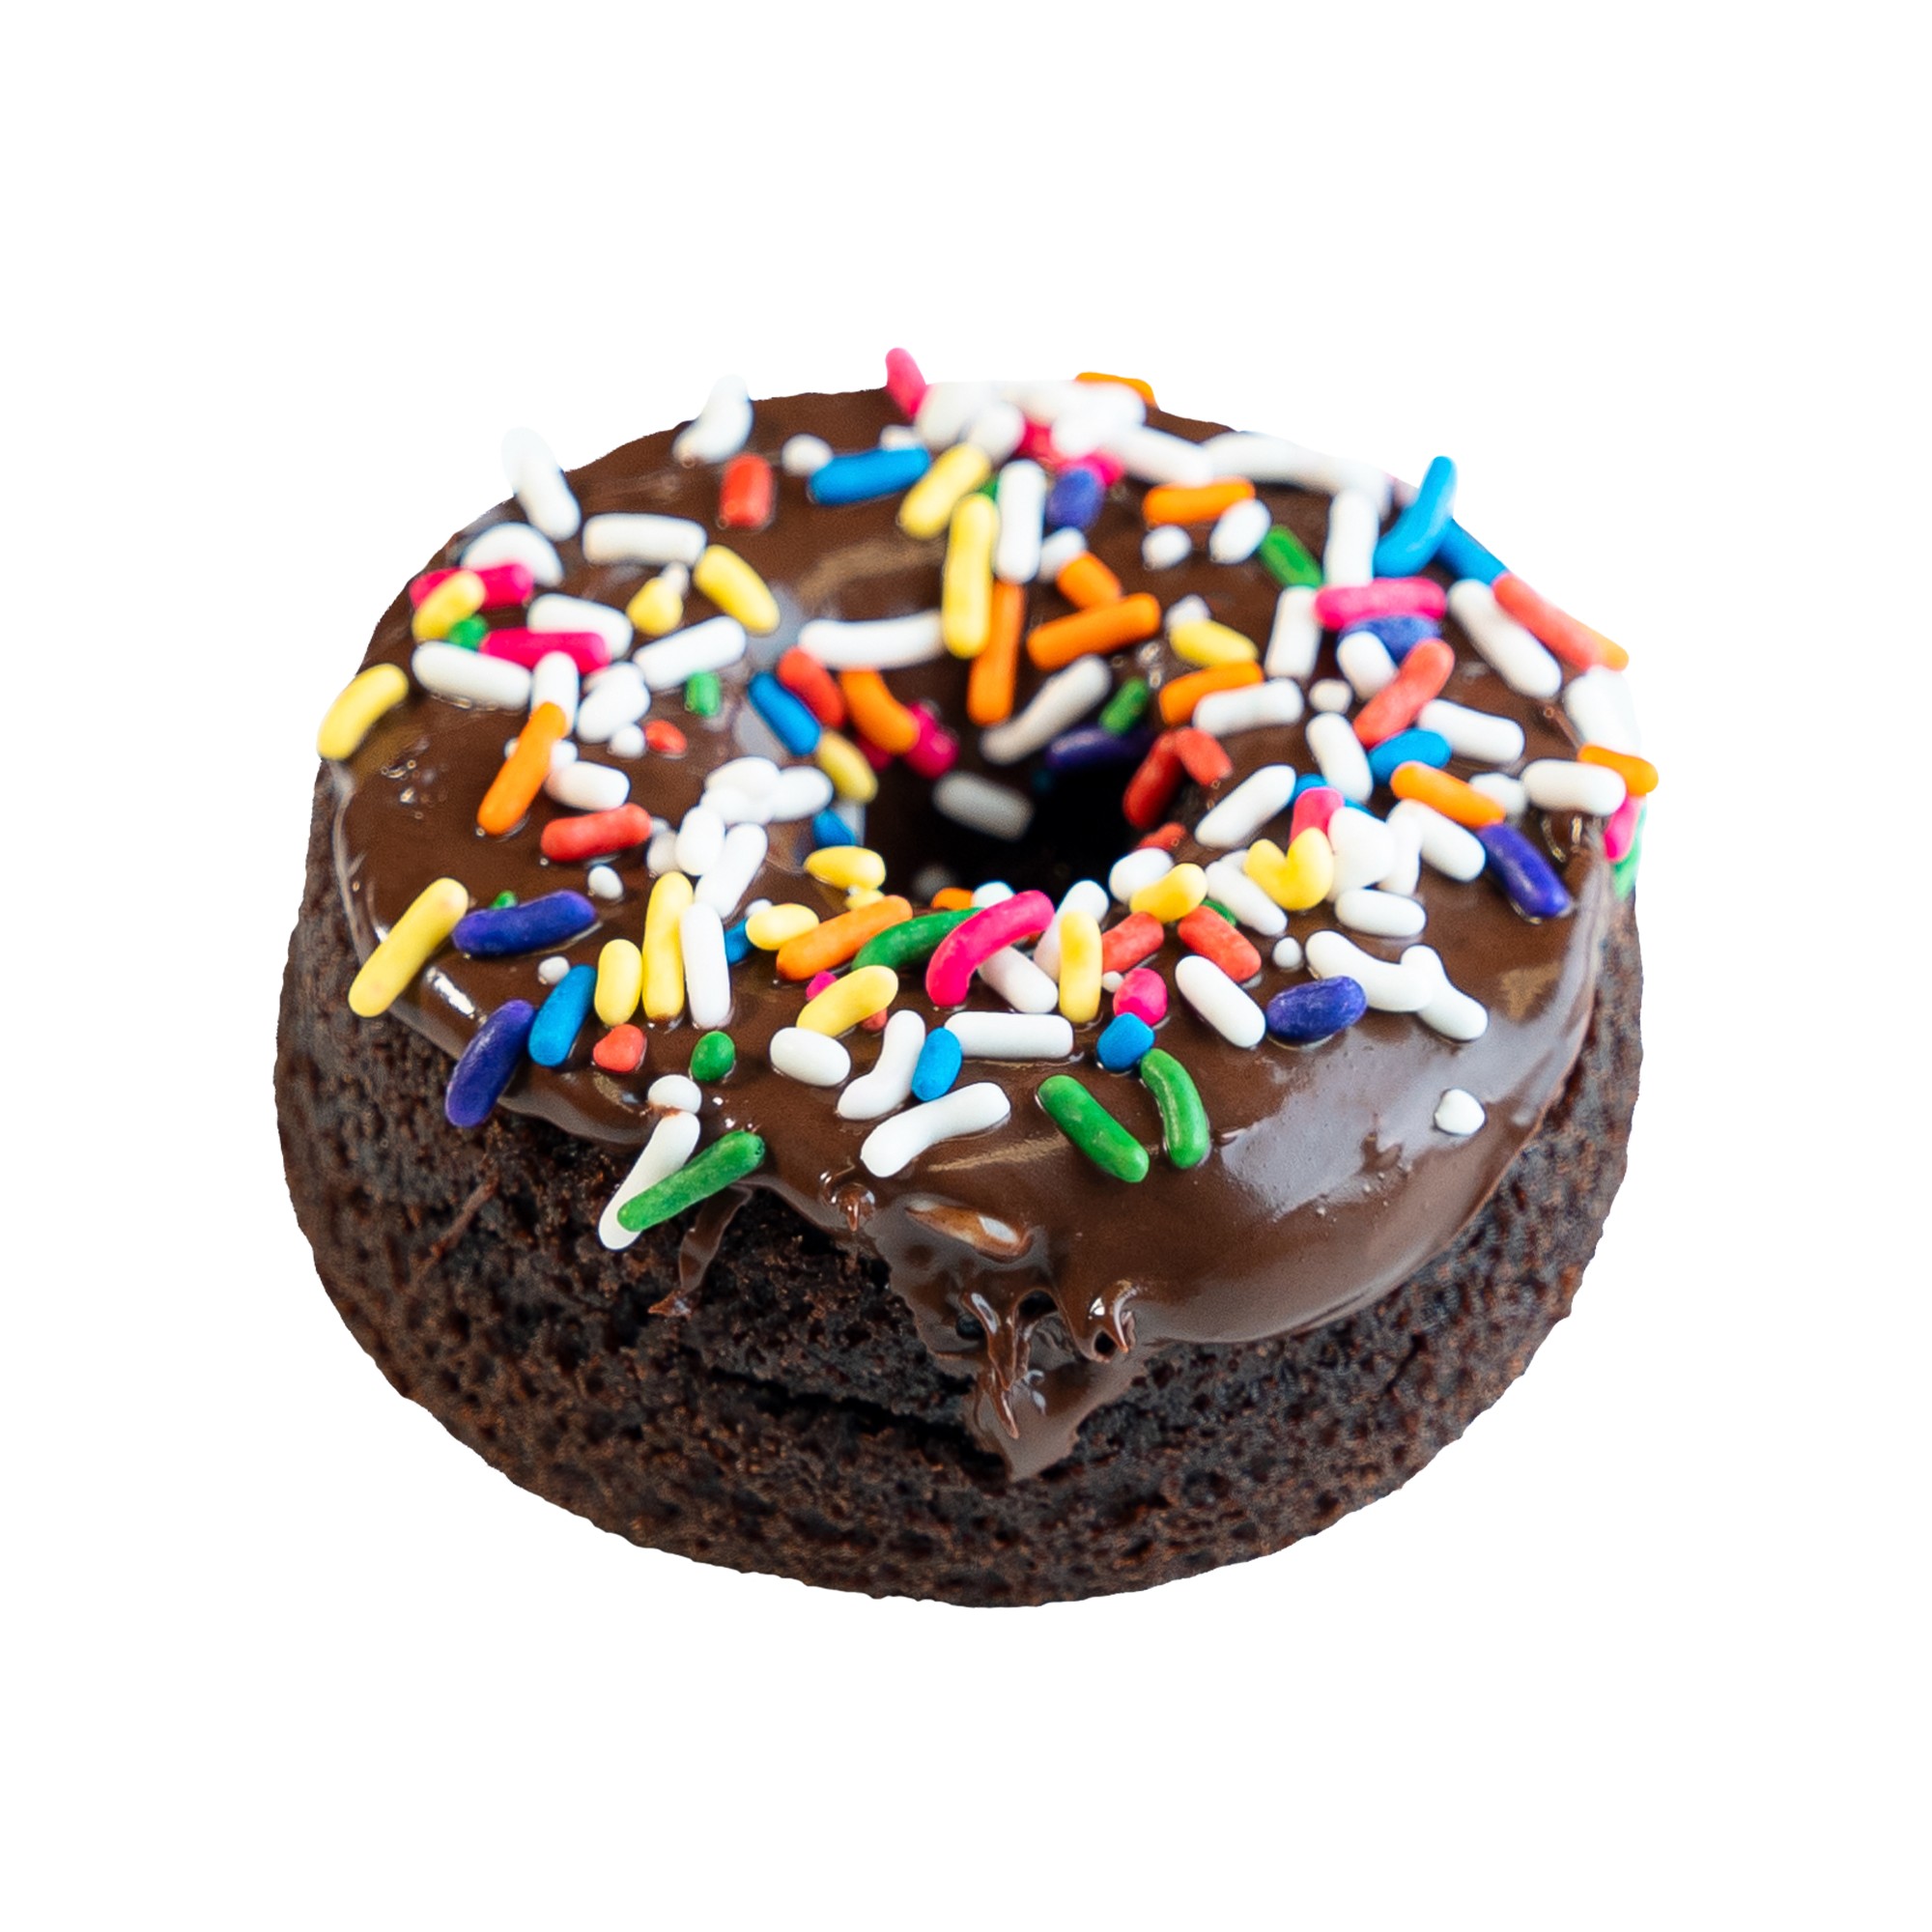 Chocolate Birthday Cake mini